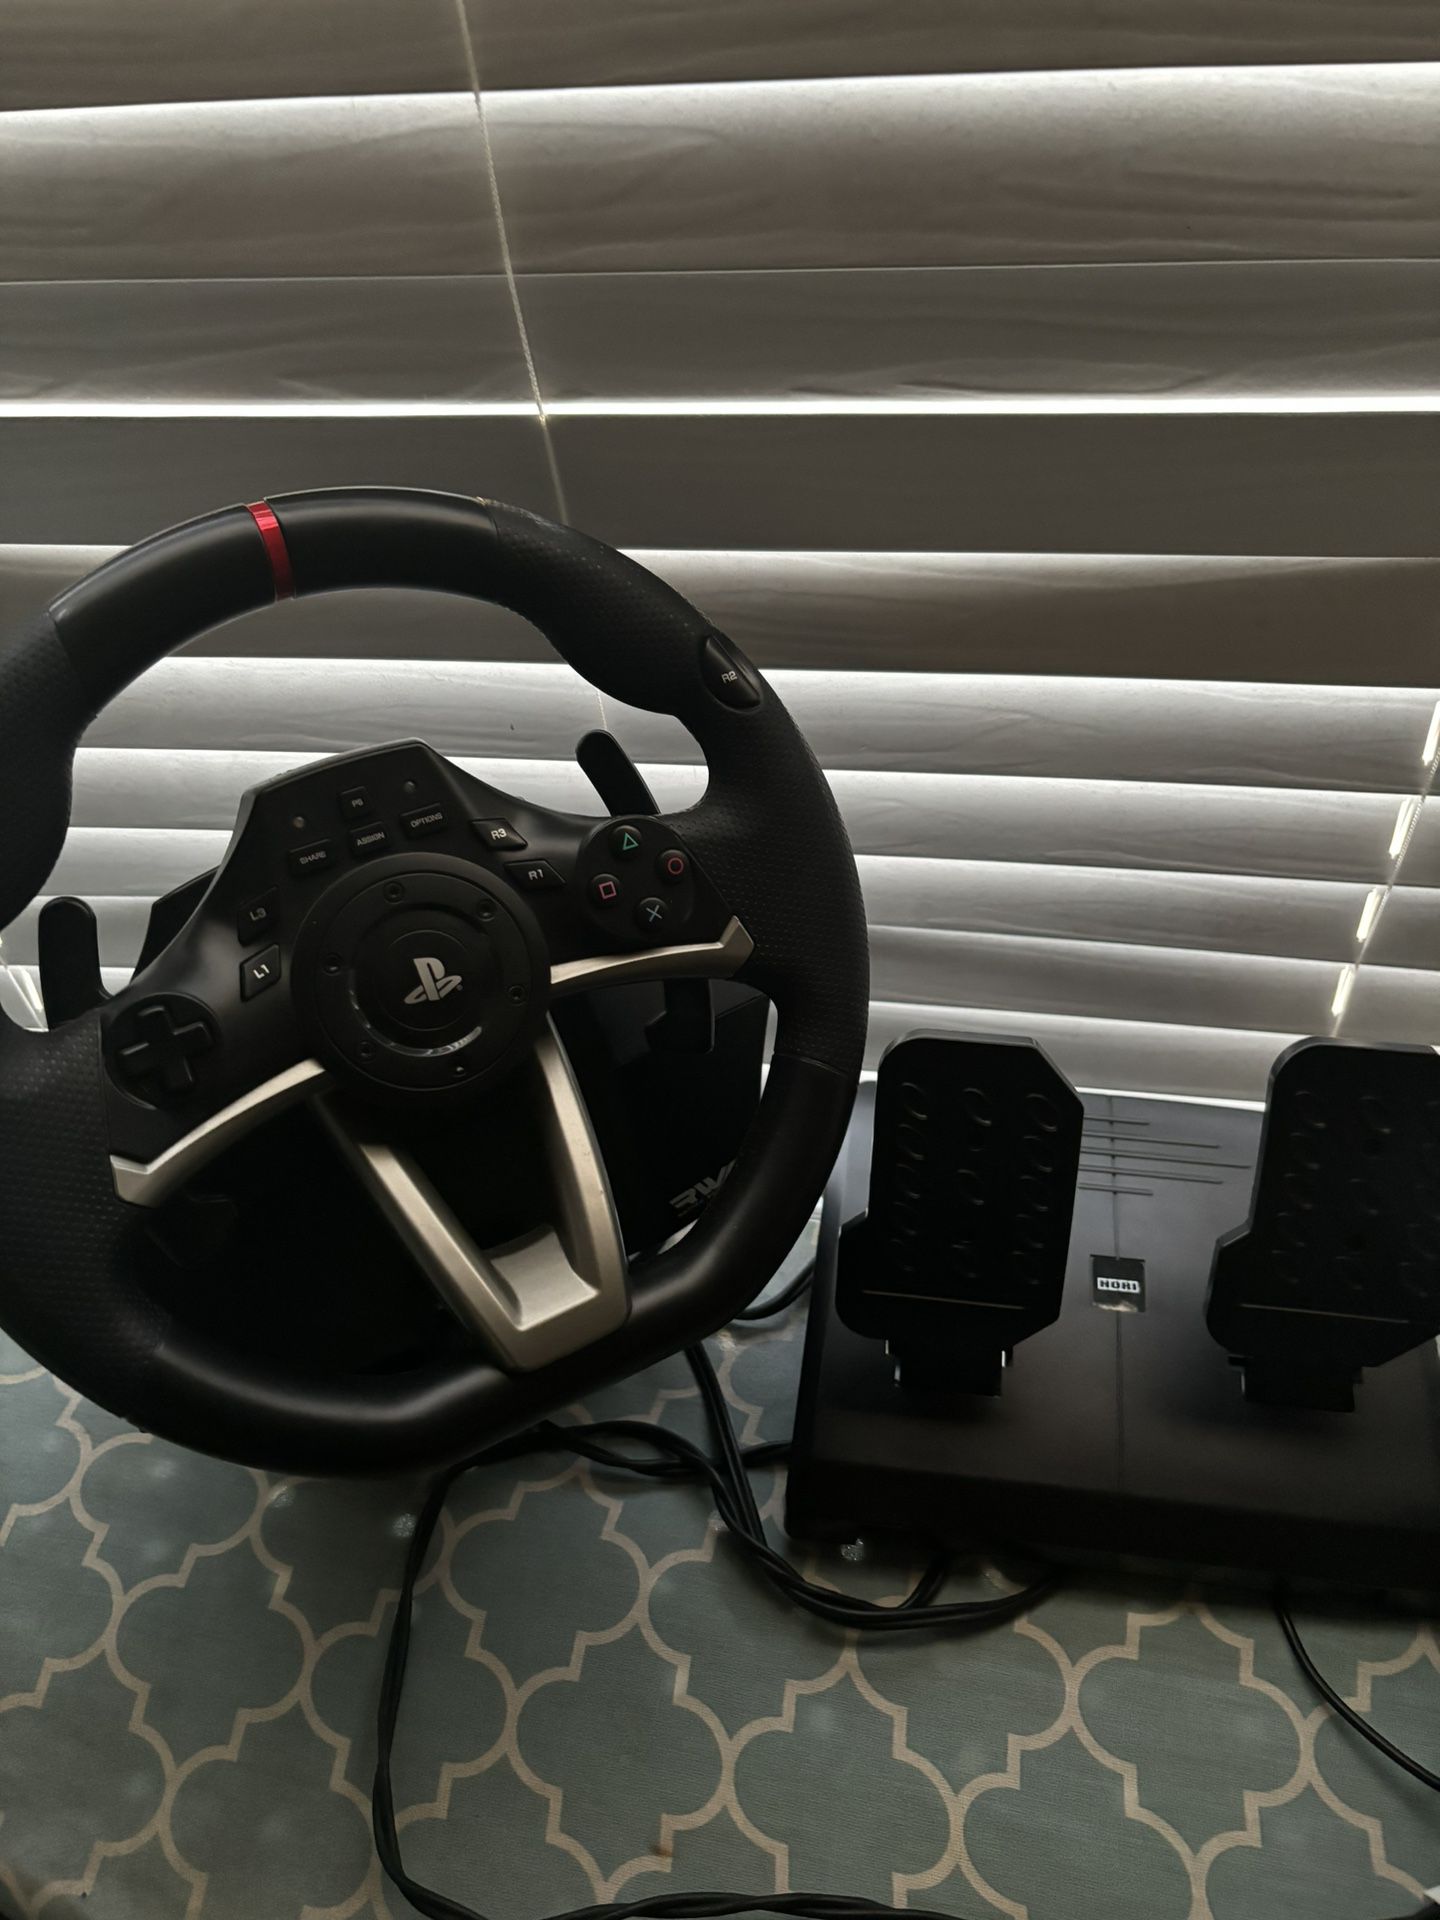 PlayStation Steering Wheel